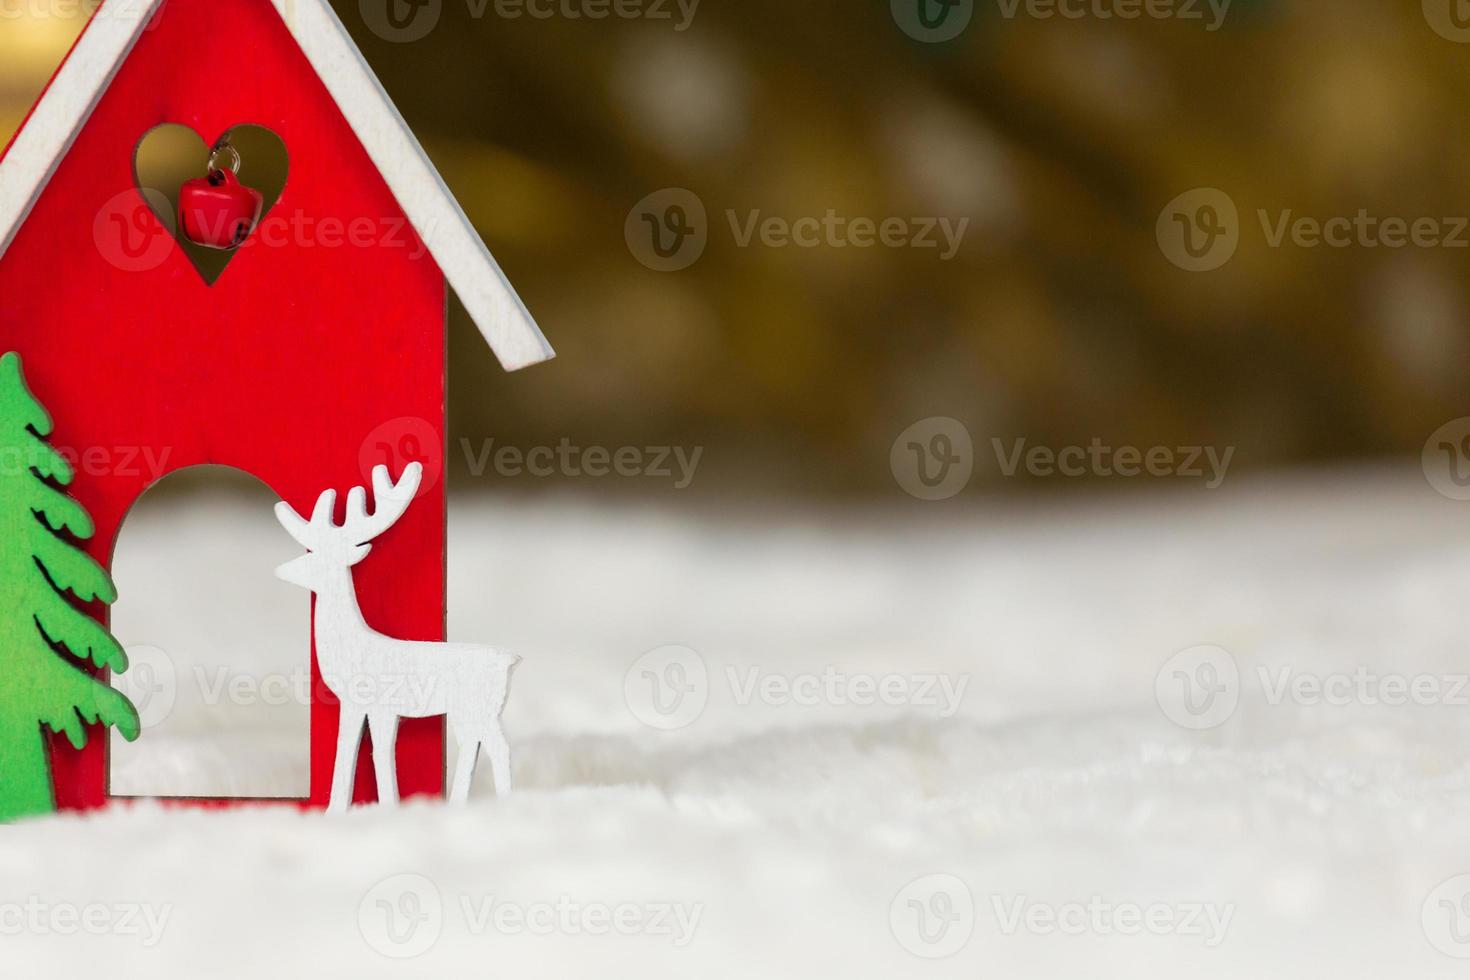 kerst houten speelgoed huis herten en boom op een witte deken die sneeuw imiteert foto